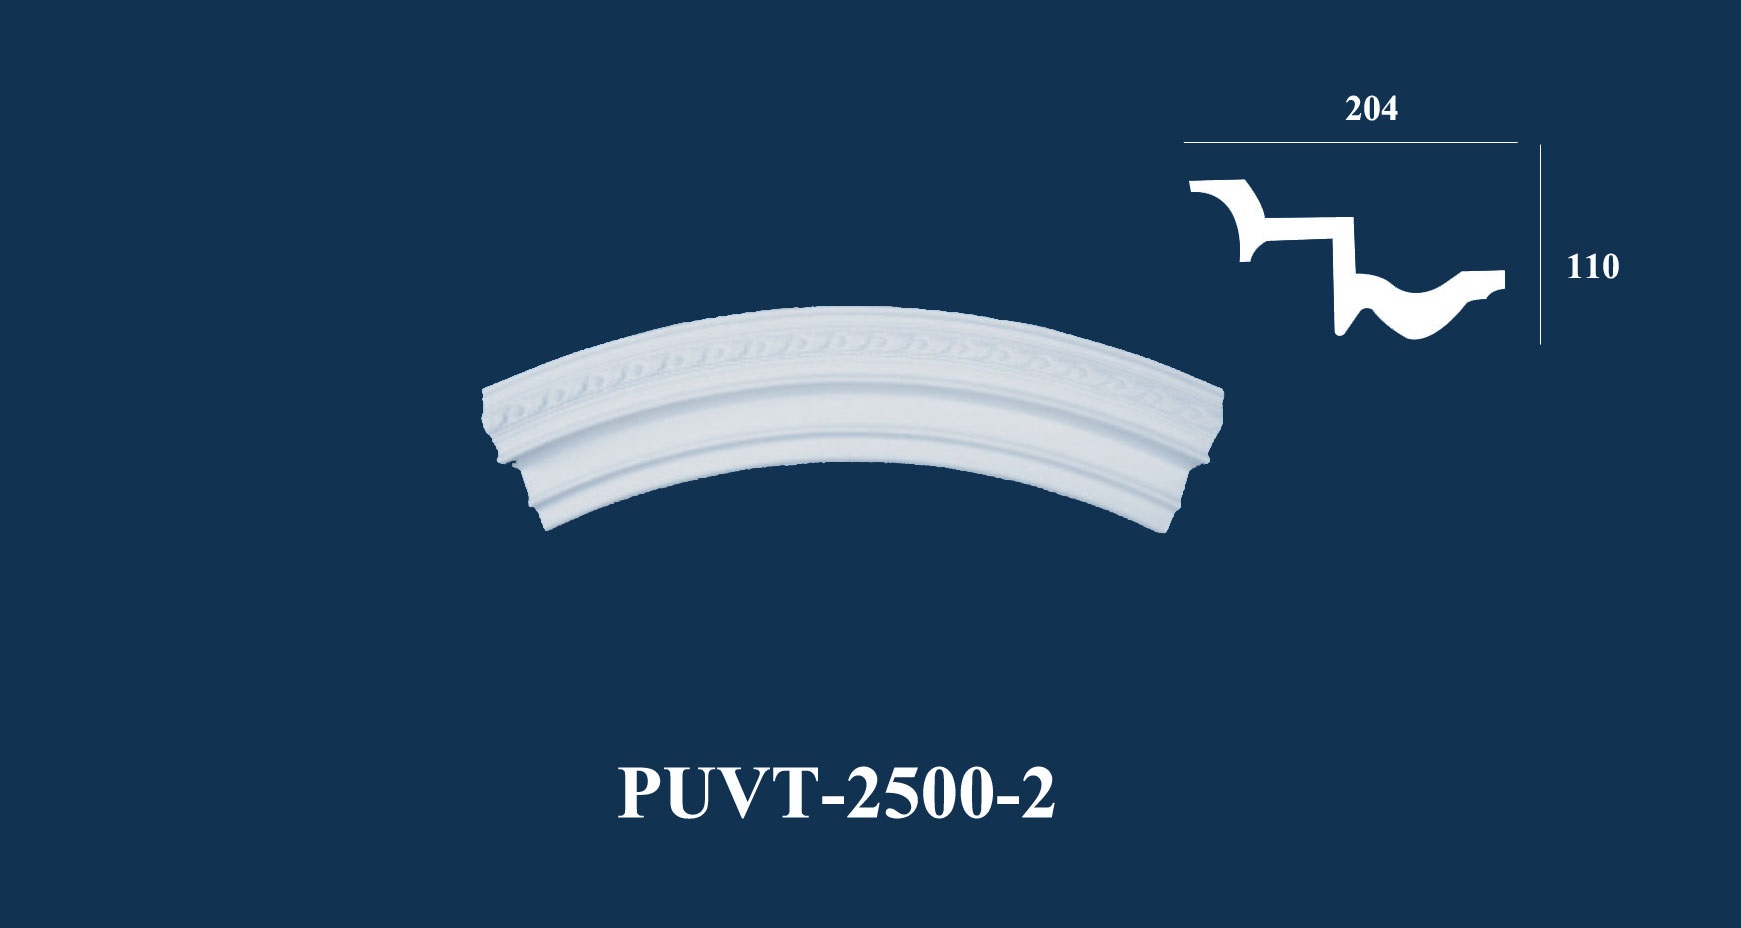 VÒM TRẦN TRÒN PUVT - 2500 - 2